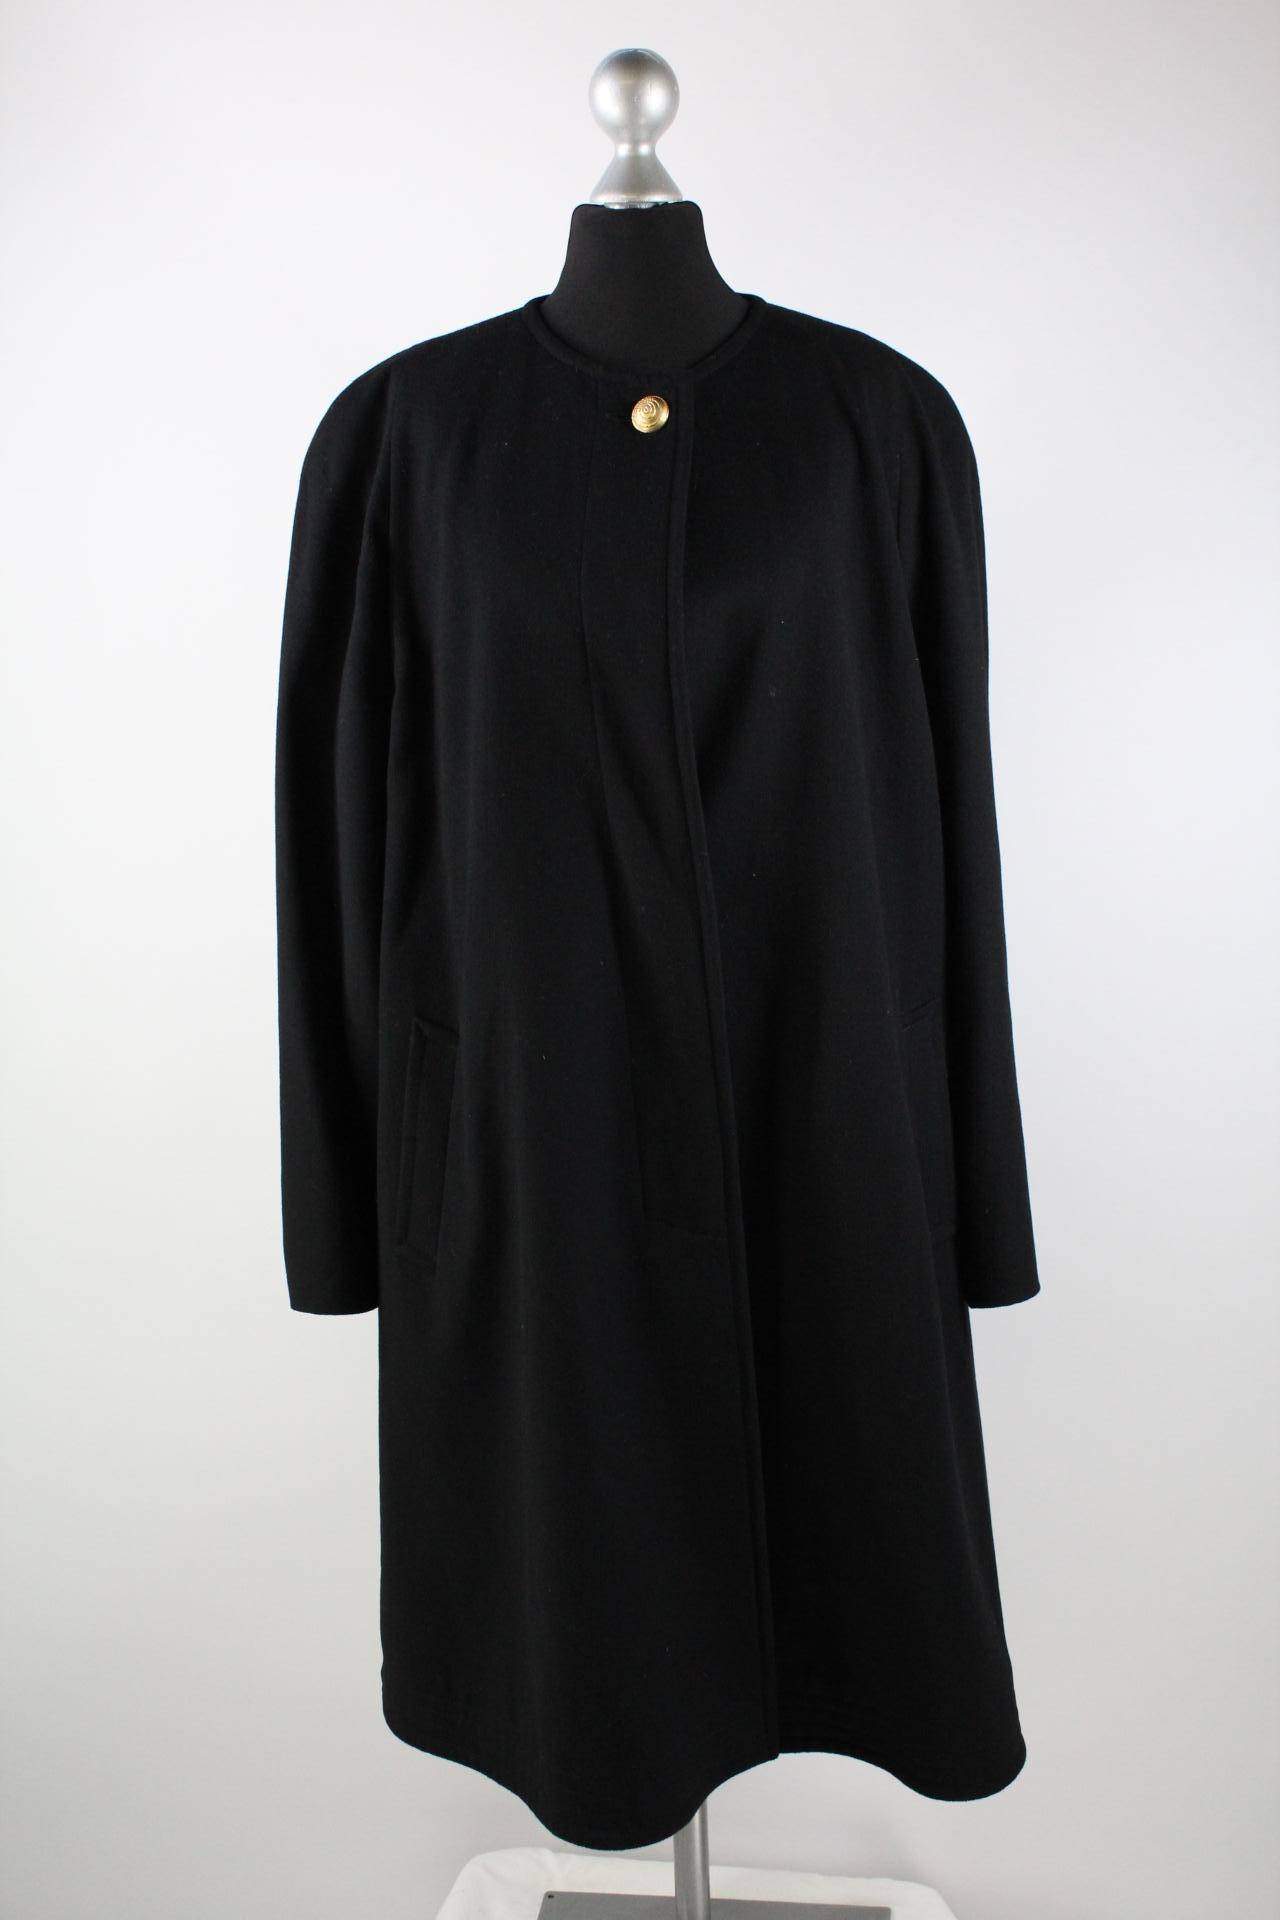 Bauer Damen-Mantel schwarz Größe 44